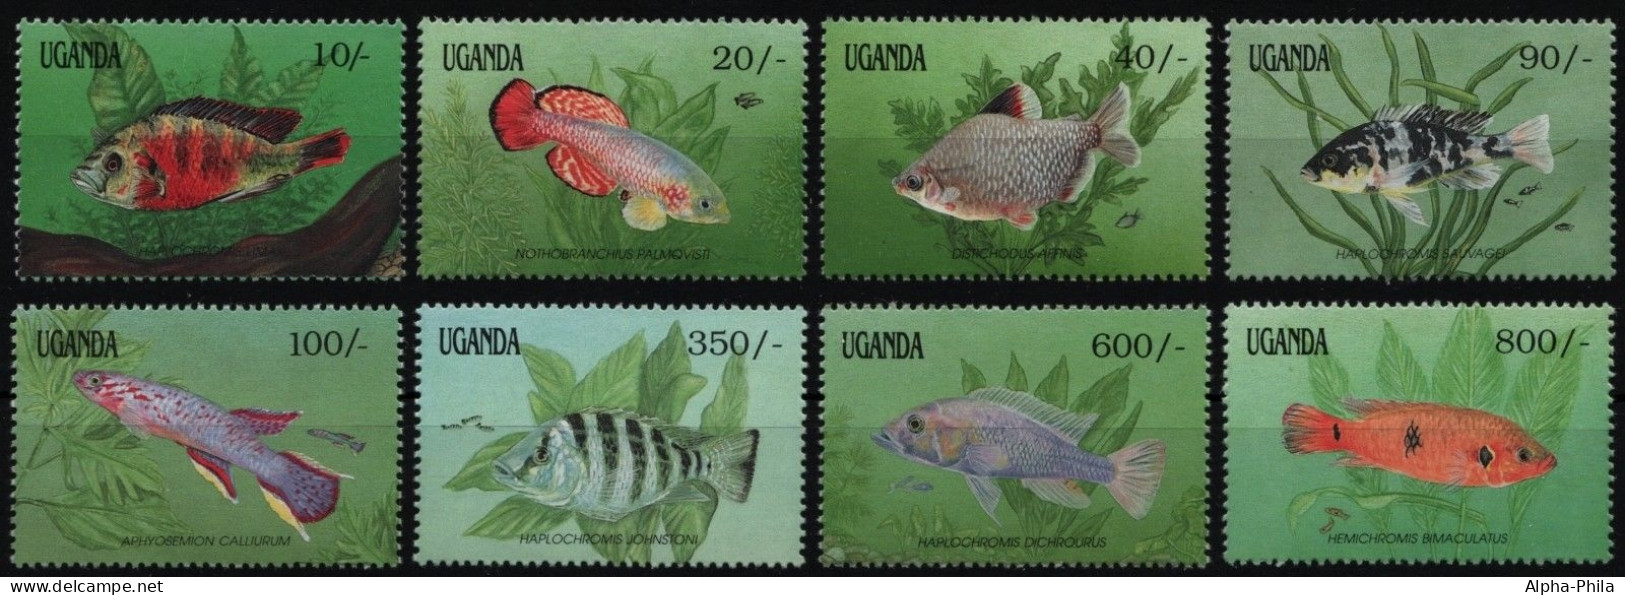 Uganda 1991 - Mi-Nr. 873-880 ** - MNH - Fische / Fish - Ouganda (1962-...)